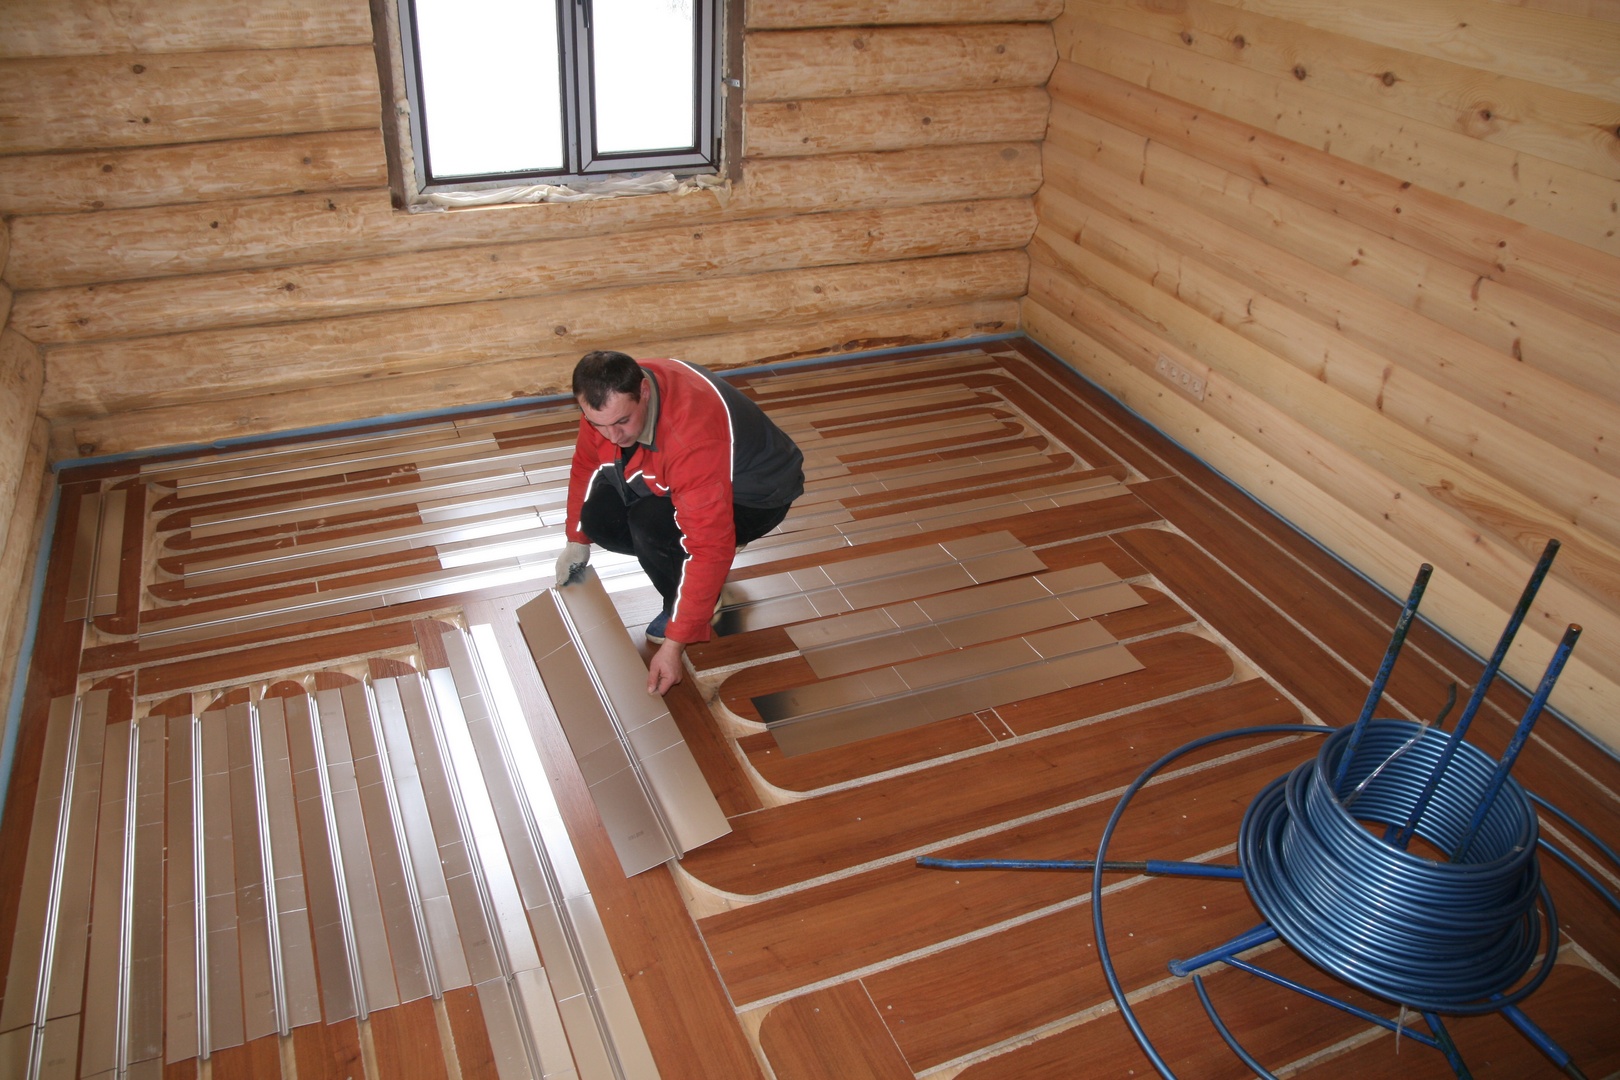 Hoe maak je een vloertaart in een houten vloer?